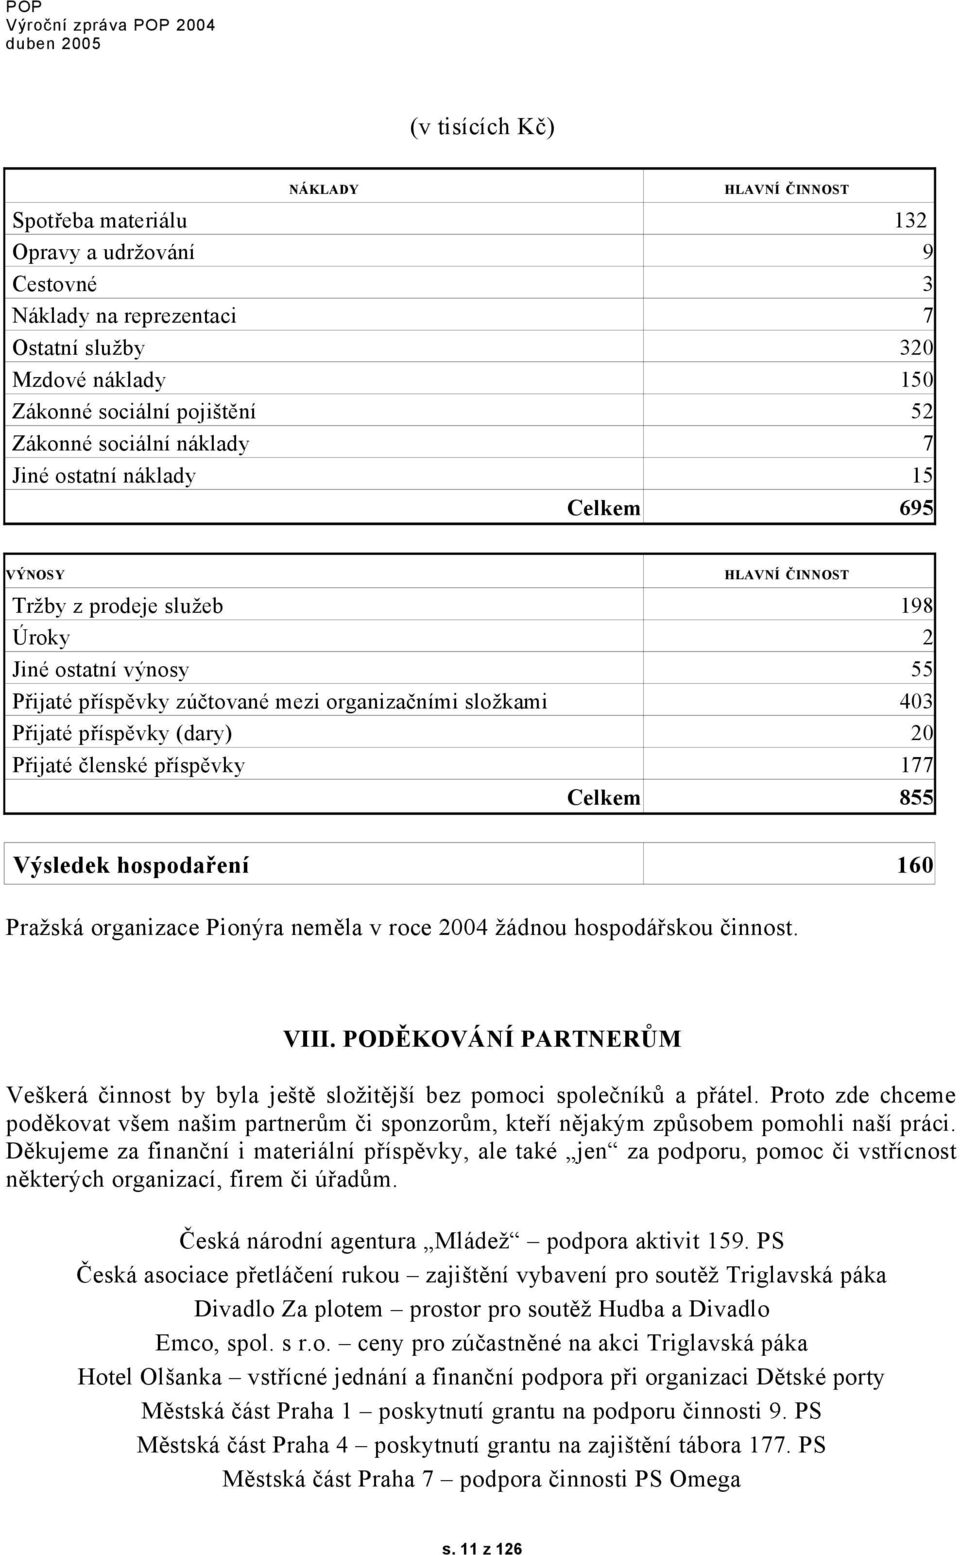 Přijaté příspěvky (dary) 20 Přijaté členské příspěvky 177 Celkem 855 Výsledek hospodaření 160 Pražská organizace Pionýra neměla v roce 2004 žádnou hospodářskou činnost. VIII.